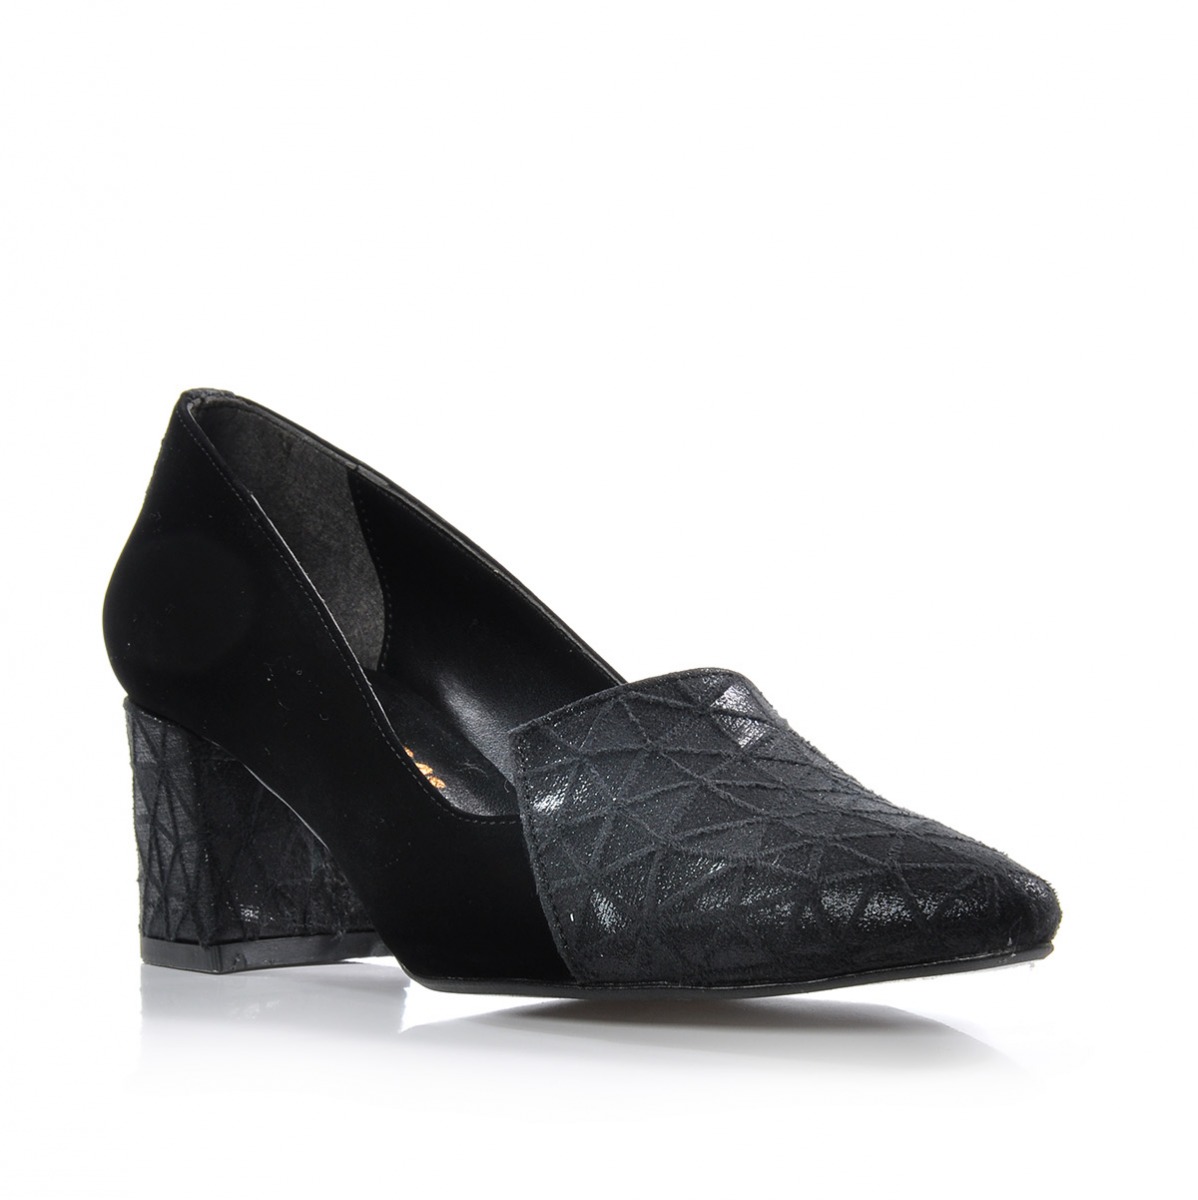 Flo Kadın  Siyah Klasik Topuklu Ayakkabı VZN-333Y. 2